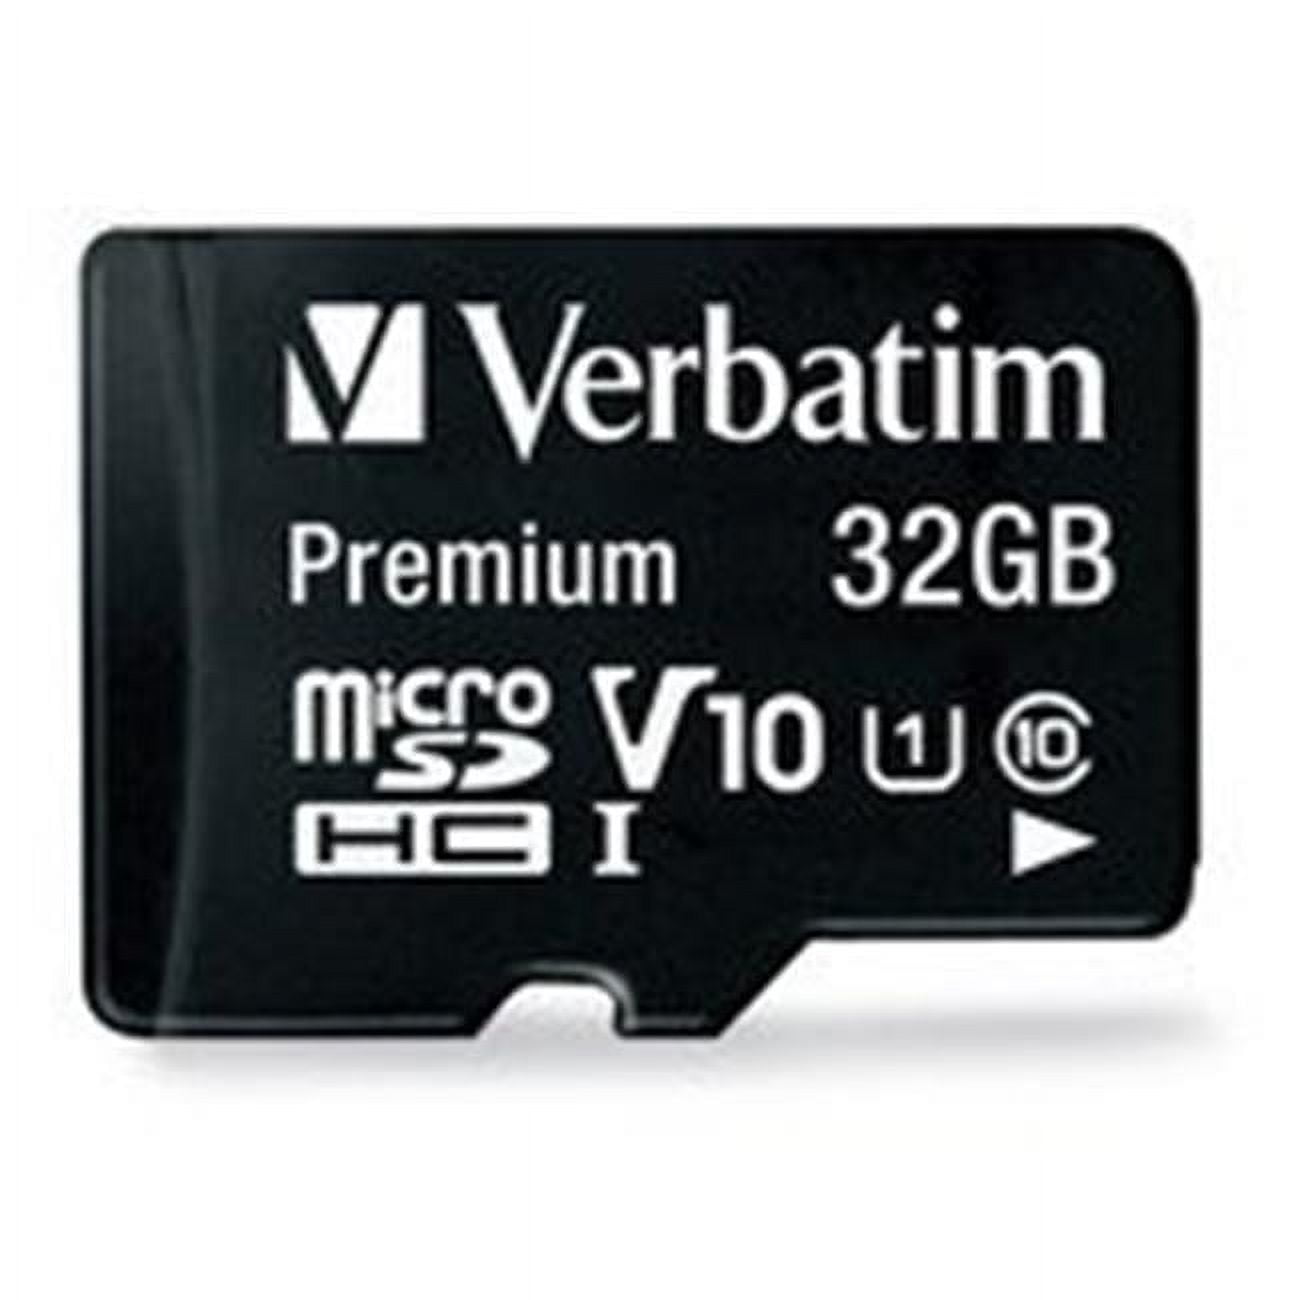 Picture of Verbatim VERC99117 32GB Premium MicroSDHC Flash Memory Card